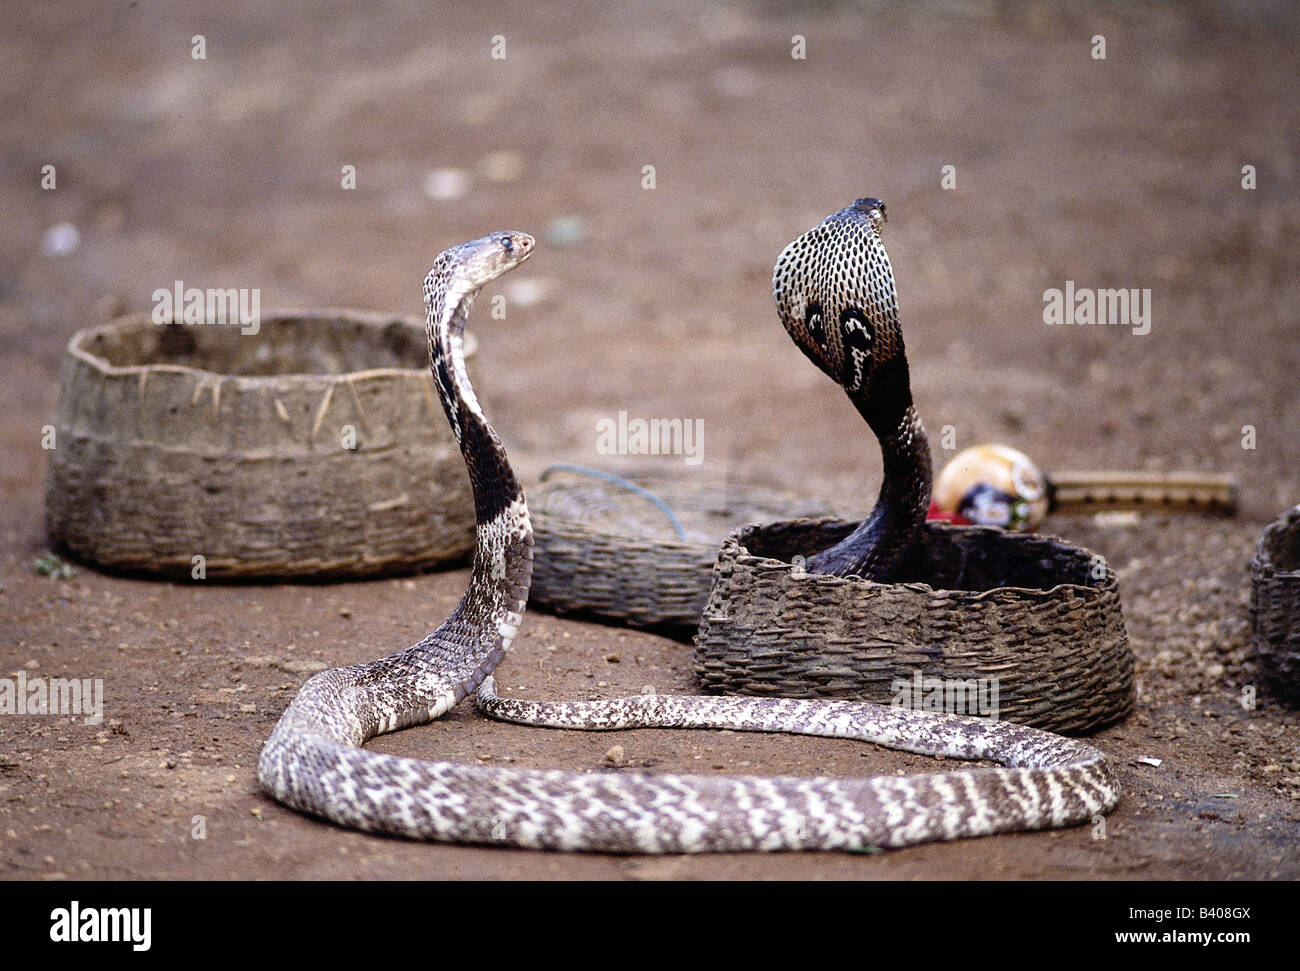 Zoología / animales, reptiles, serpientes, Indio cobra (Naja naja), dos serpientes convolved, uno en la cesta, la distribución: Asia Central Foto de stock